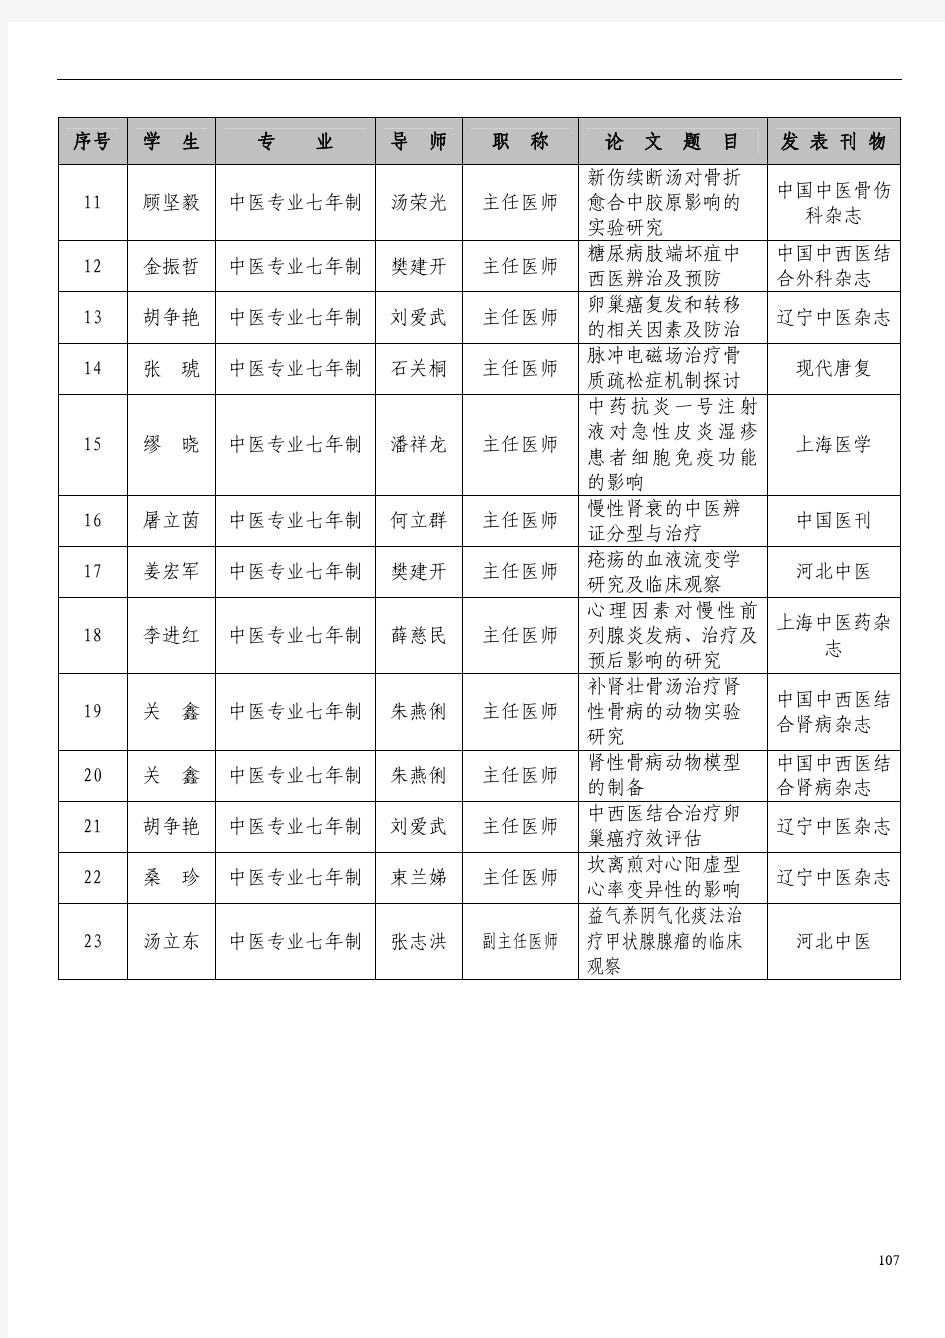 上海中医药大学学生发表论文情况统计表